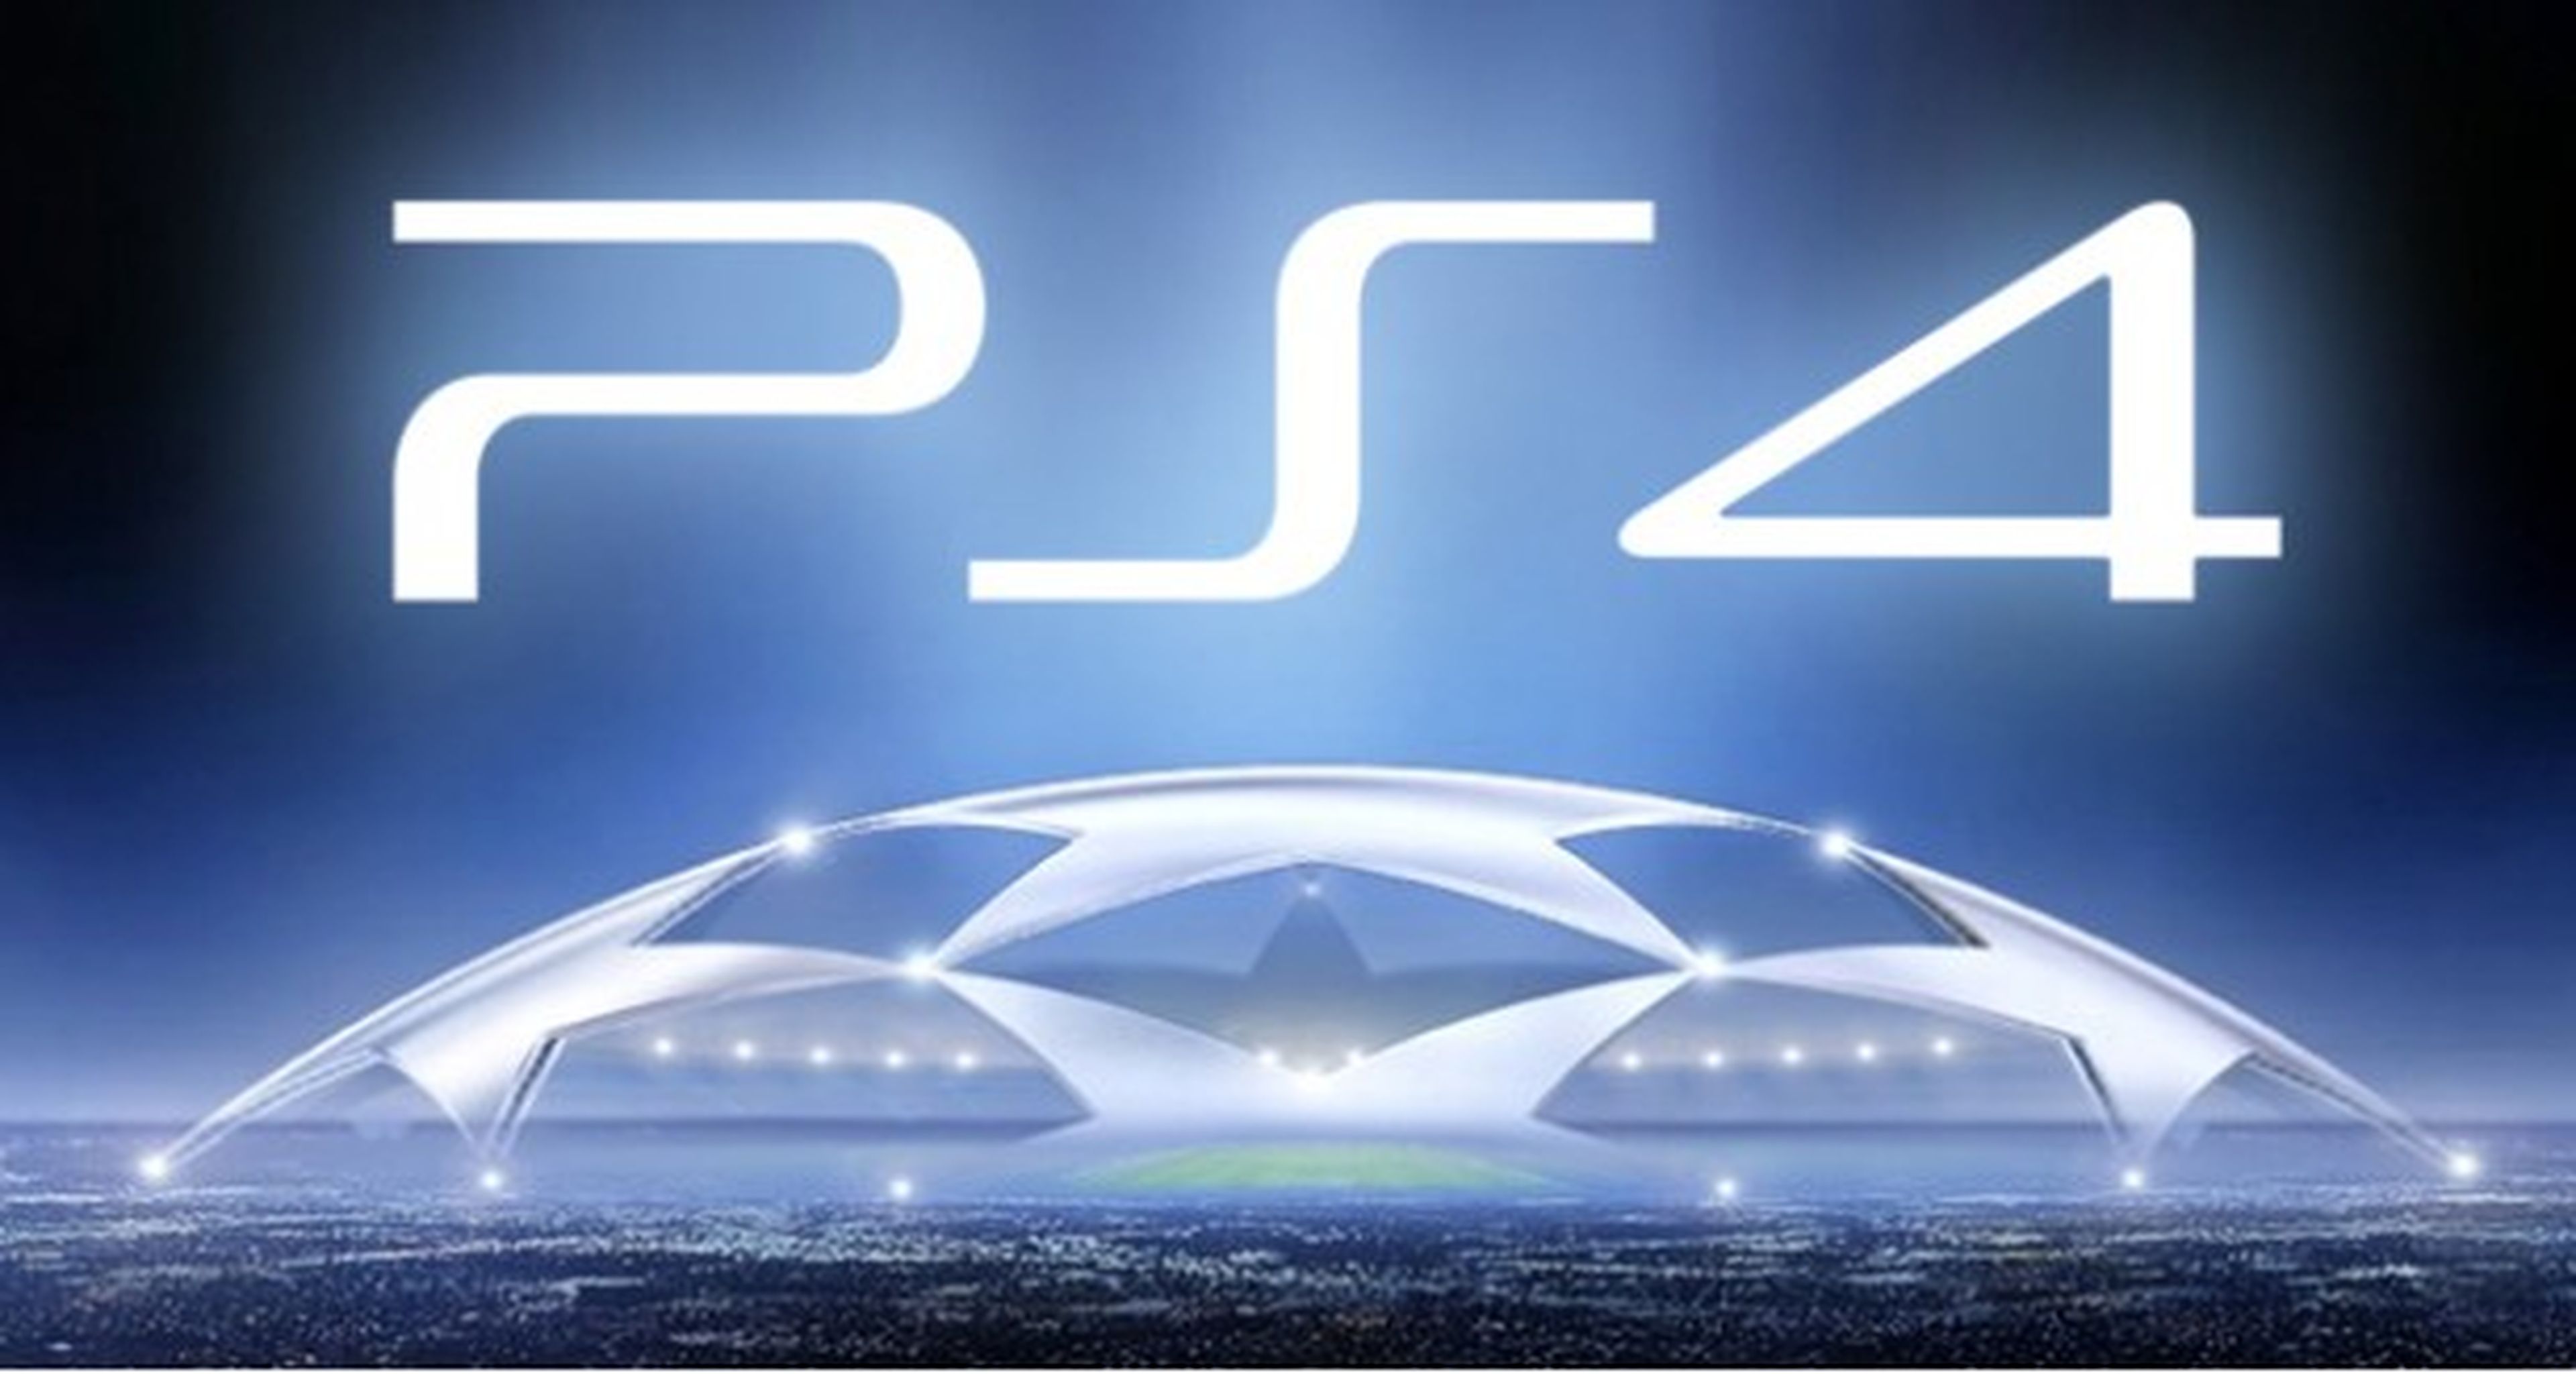 PS4 llegará a Europa en 2013, según publicidad de Sony